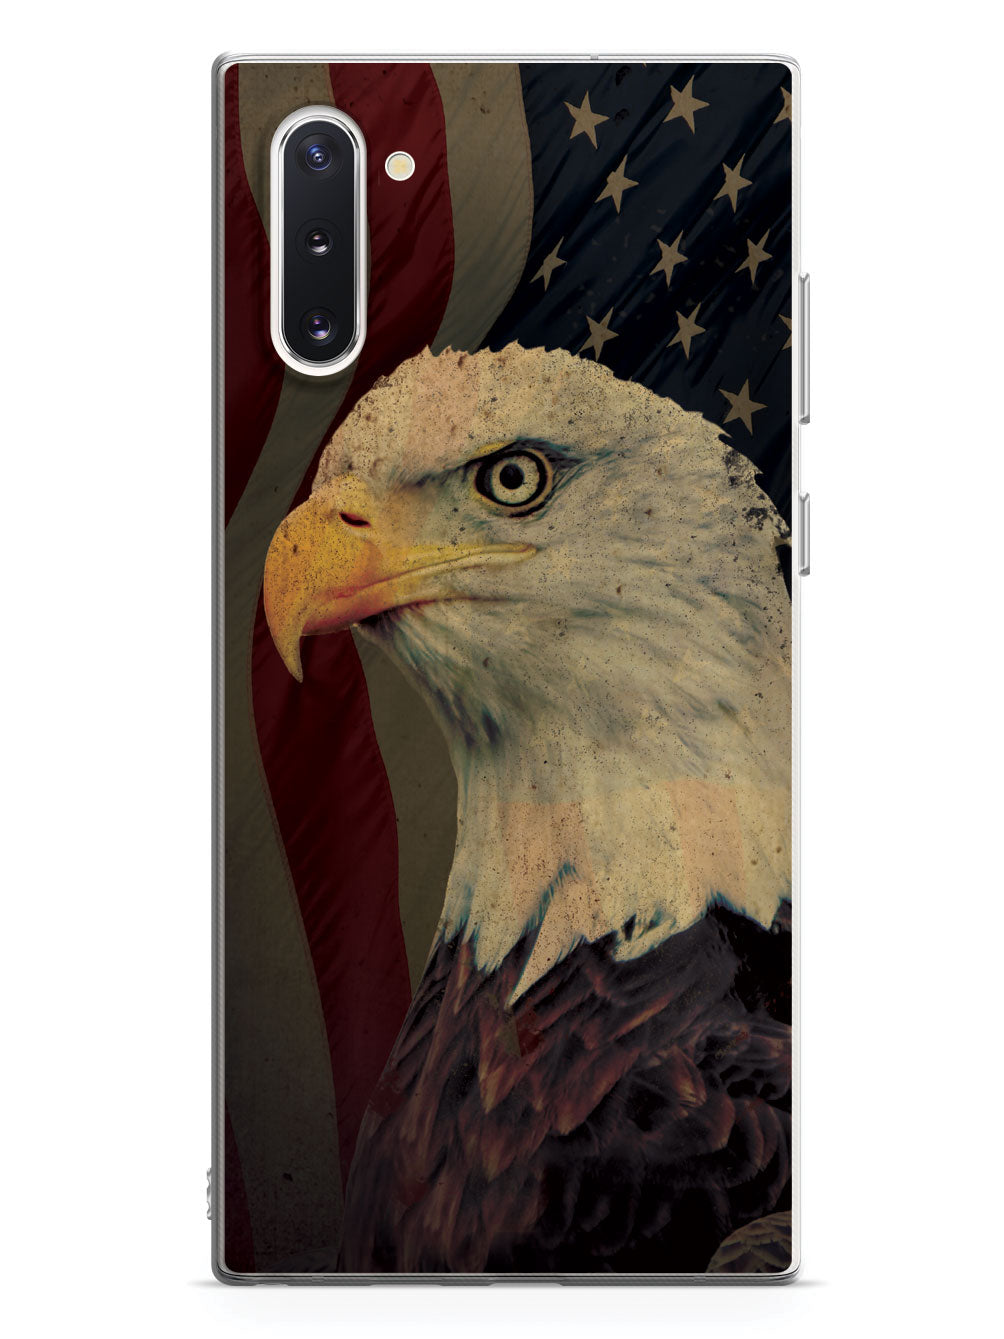 American Eagle - Patriotic Case